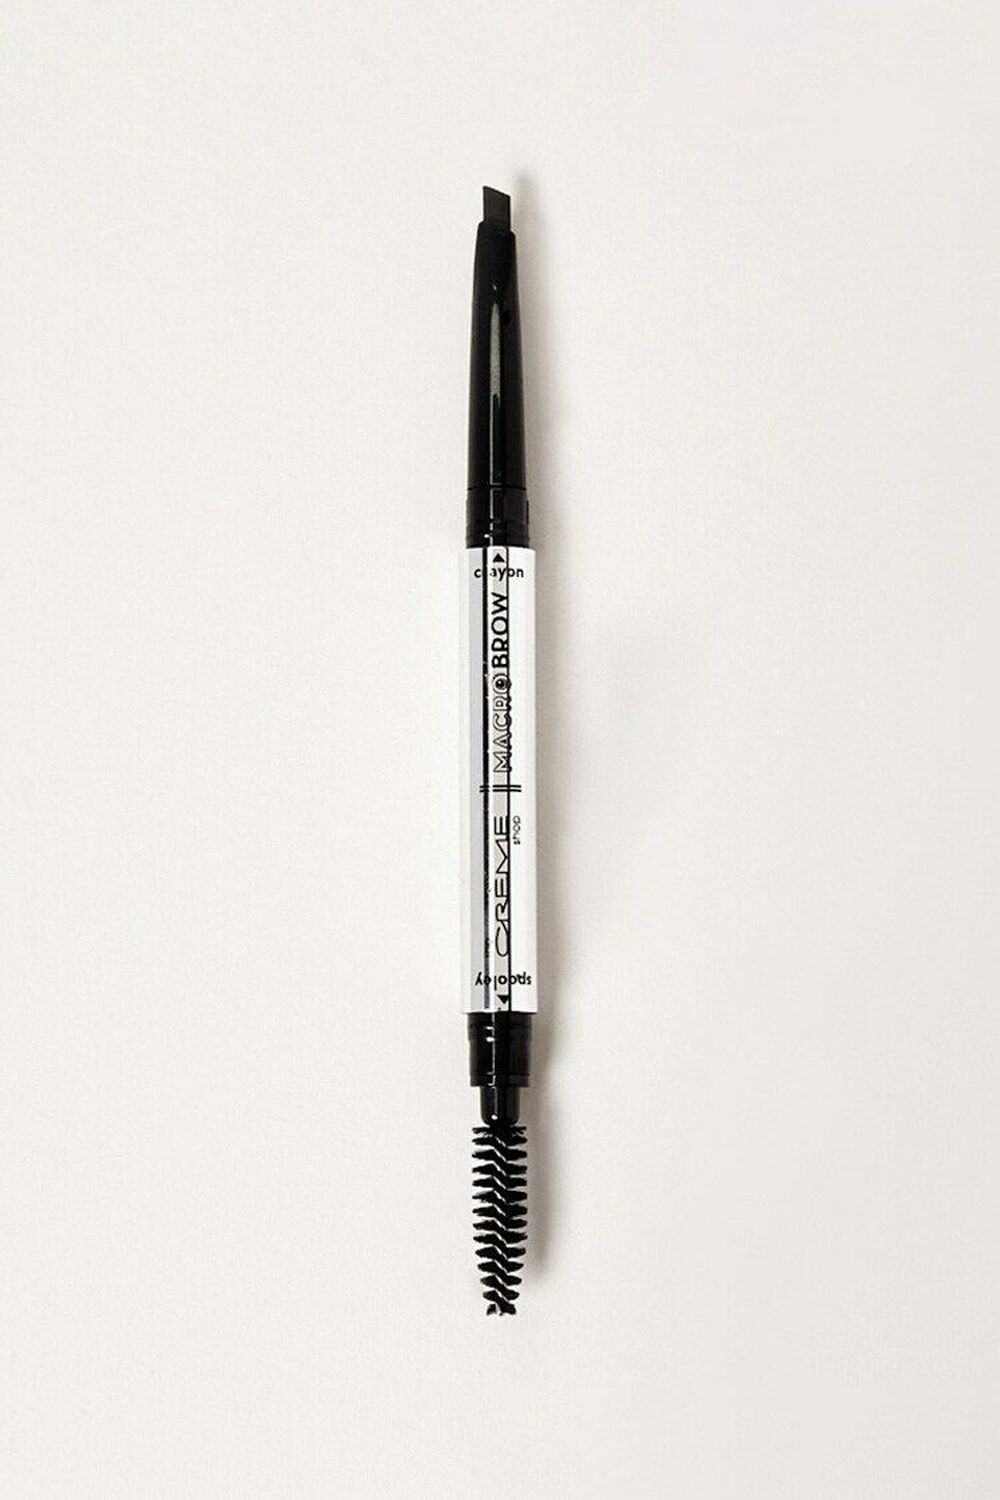 EBONY The Crème Shop Macro Brow Pencil, image 1